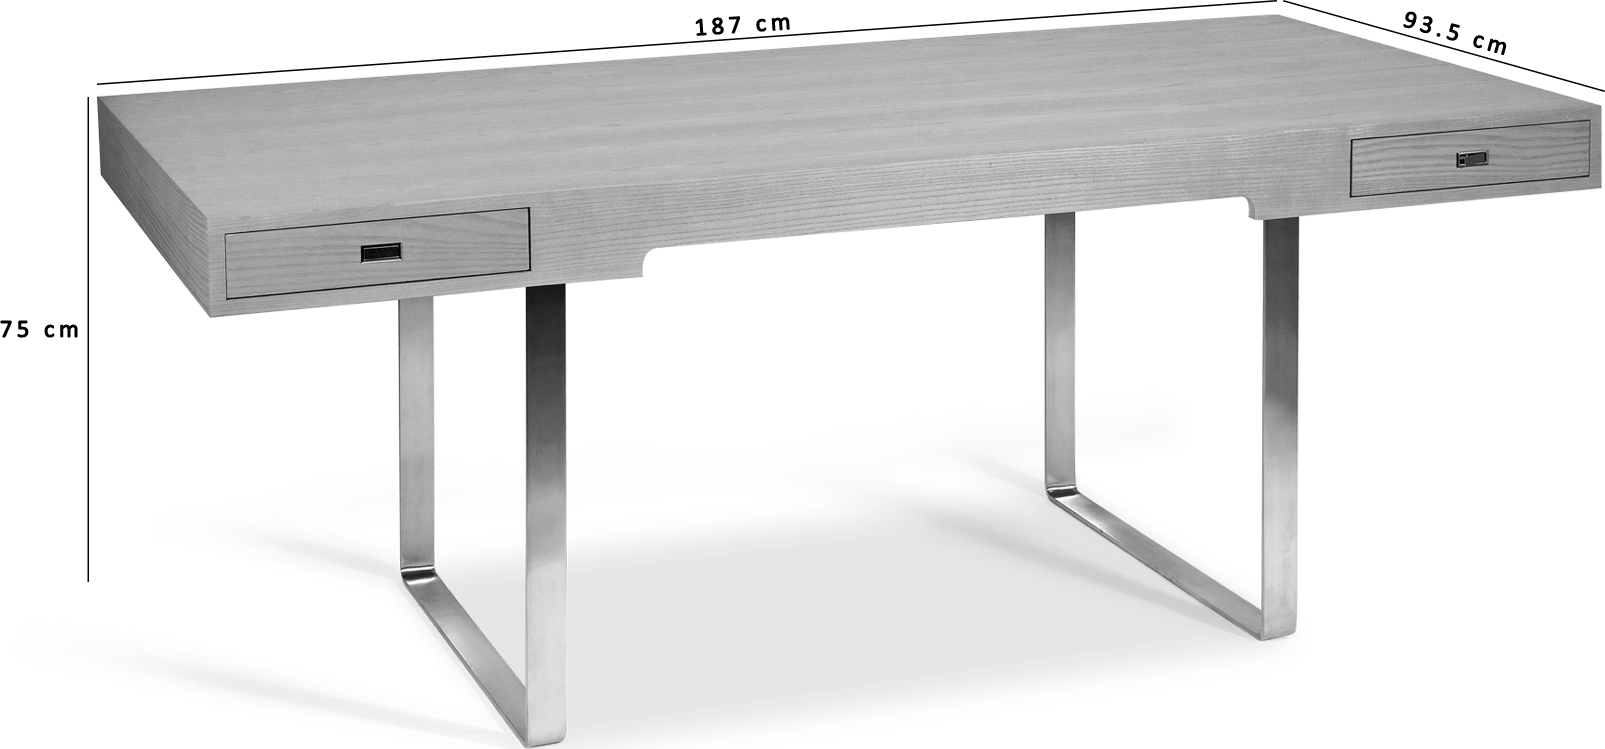 CH110 Desk